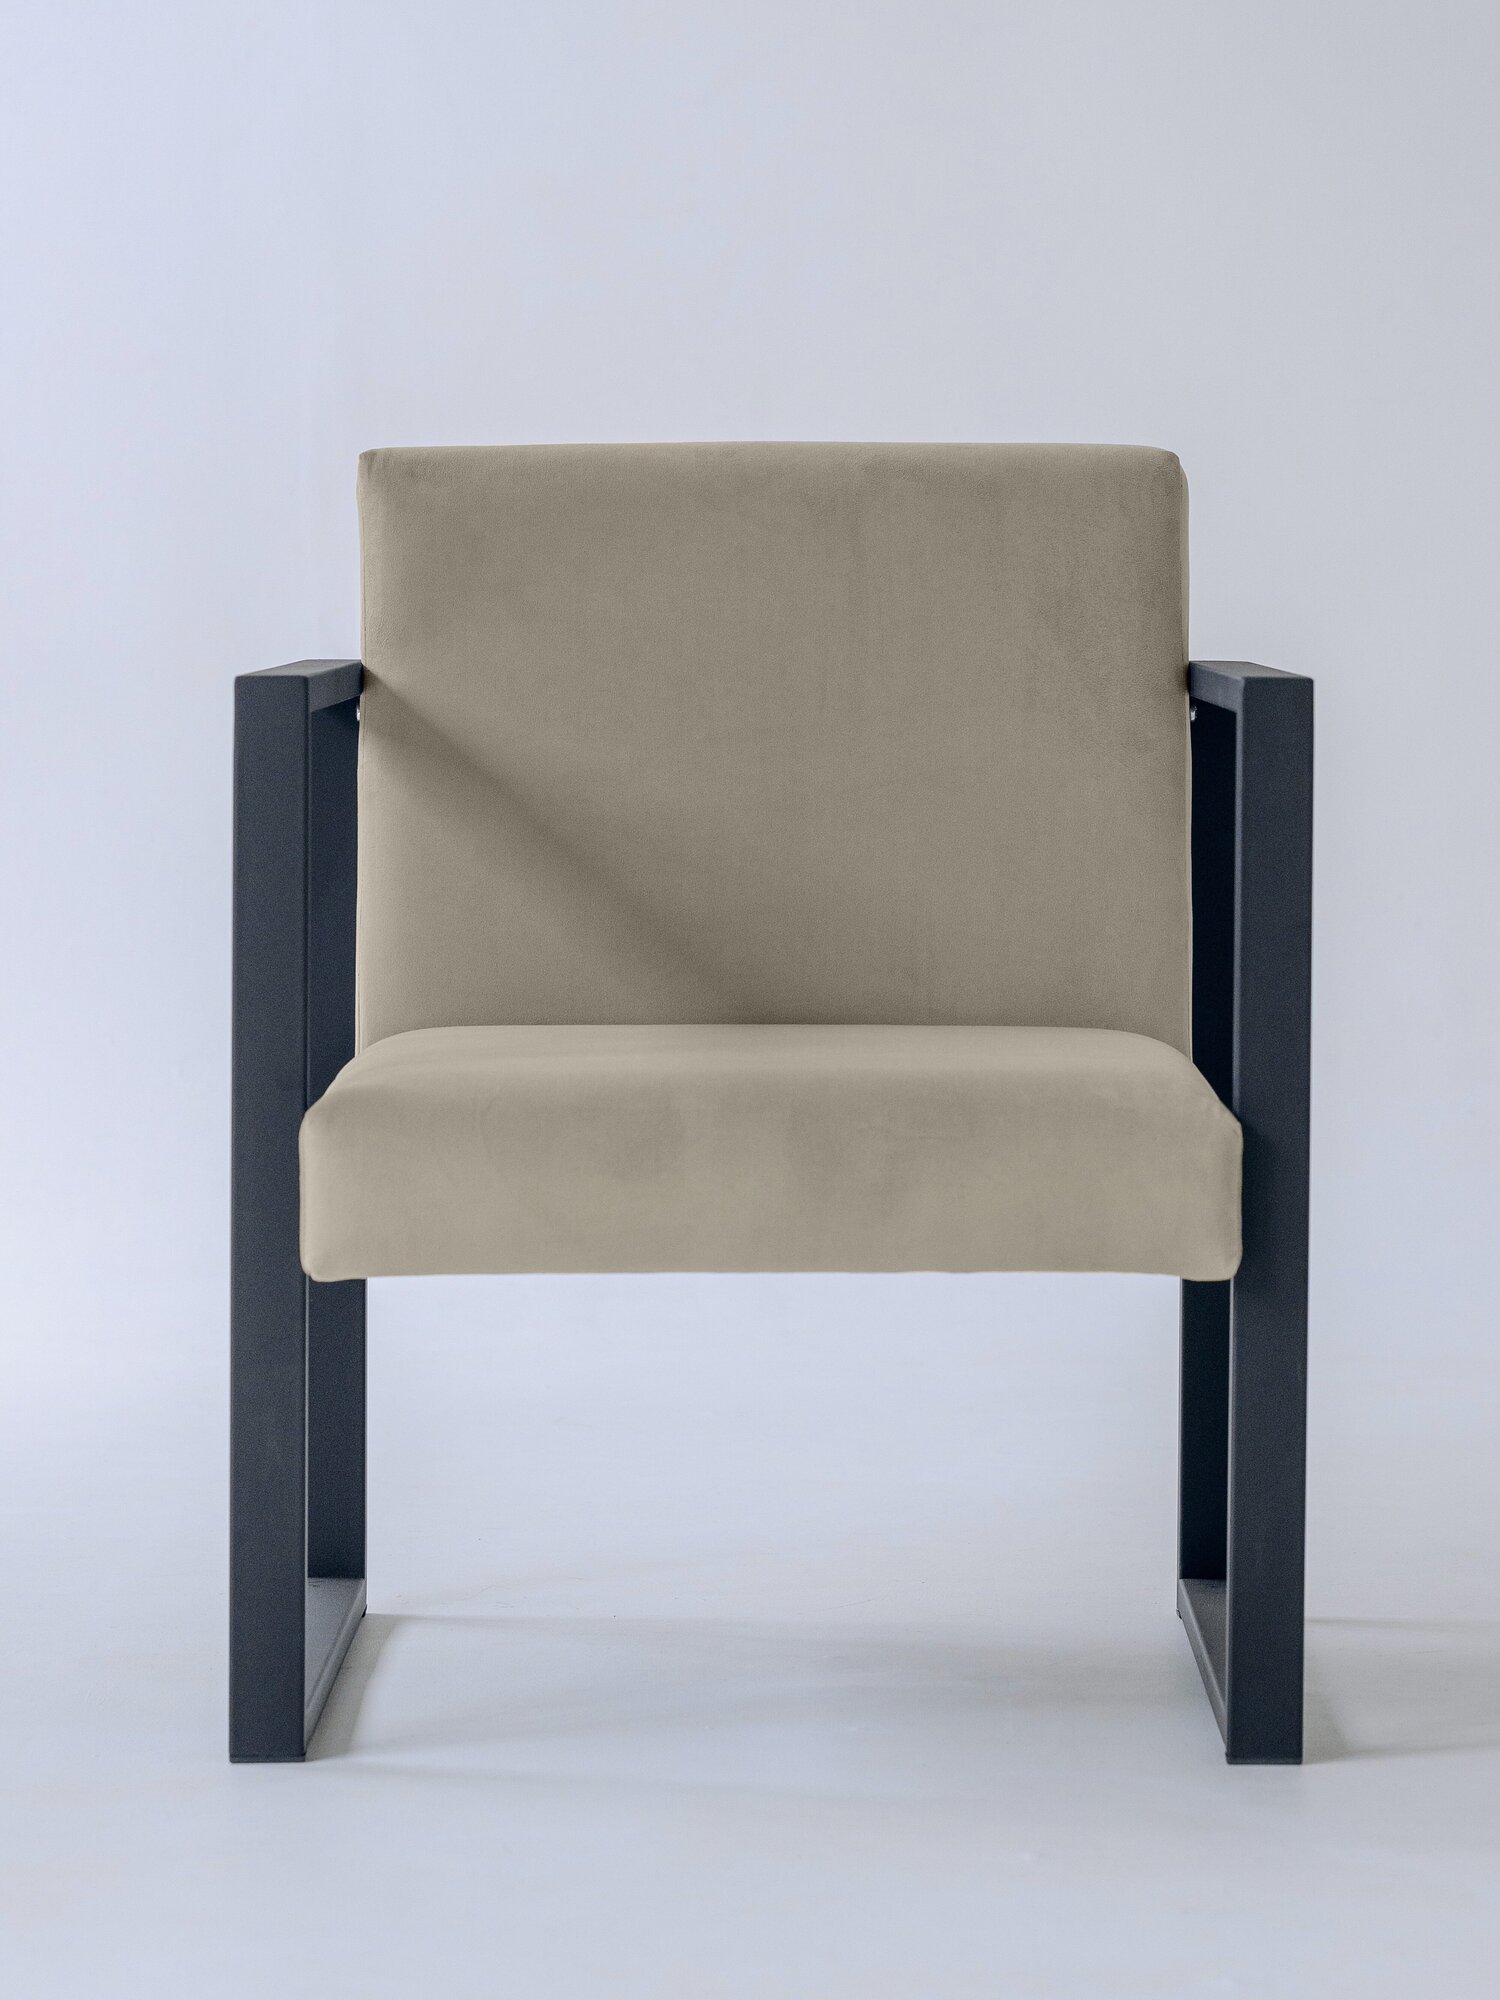 Кресло лофт Abyssinian 70х70, обивка: велюр, цвет: бежевый в гостиную, офис, кафе, холл, зал ожидания, на кухню - фотография № 1